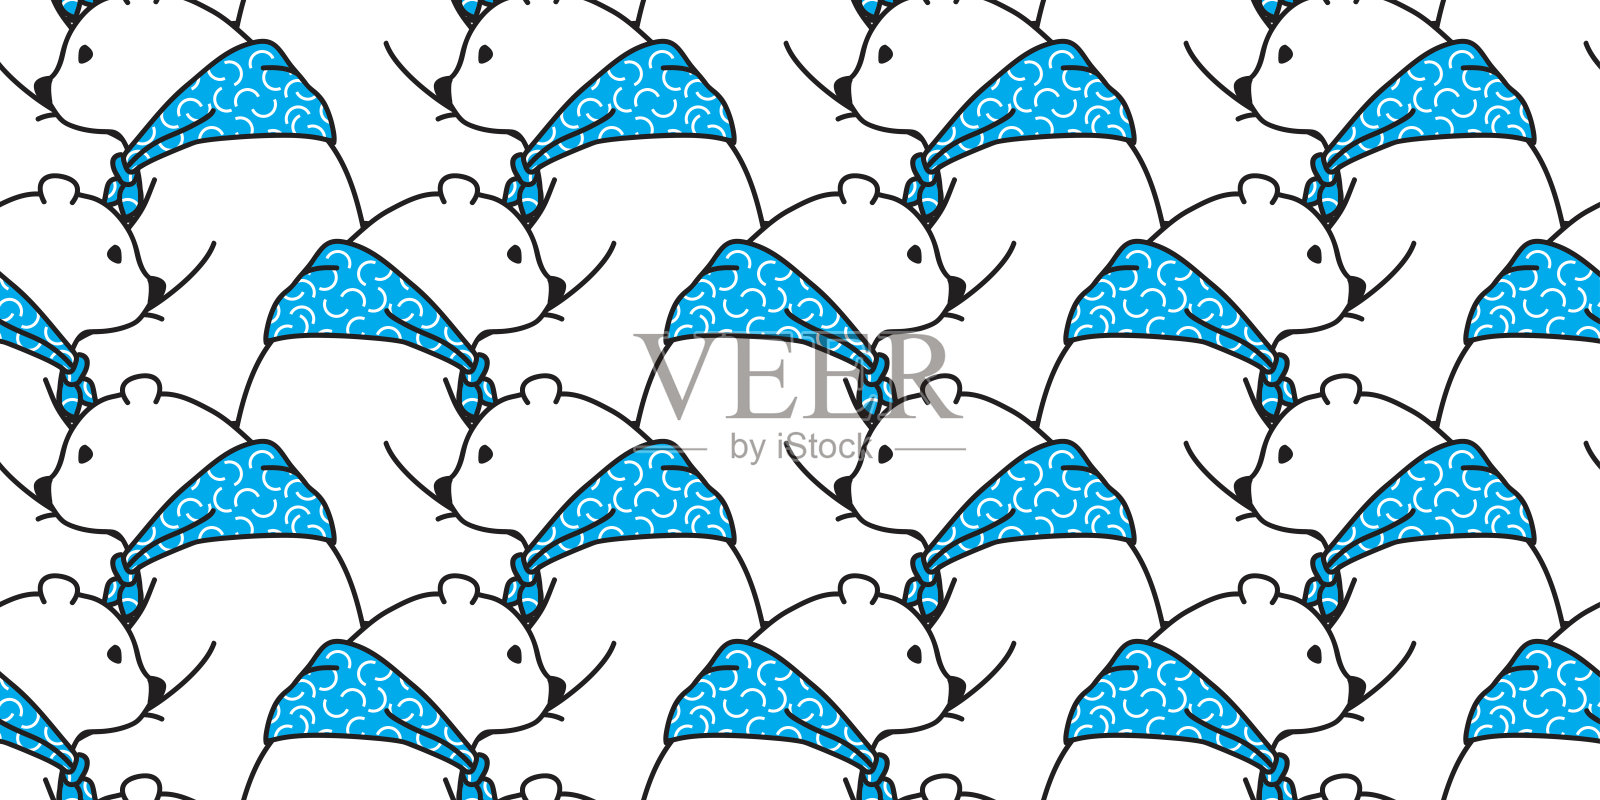 熊图标北极熊泰迪蓝色围巾涂鸦矢量无缝图案墙纸背景插画图片素材